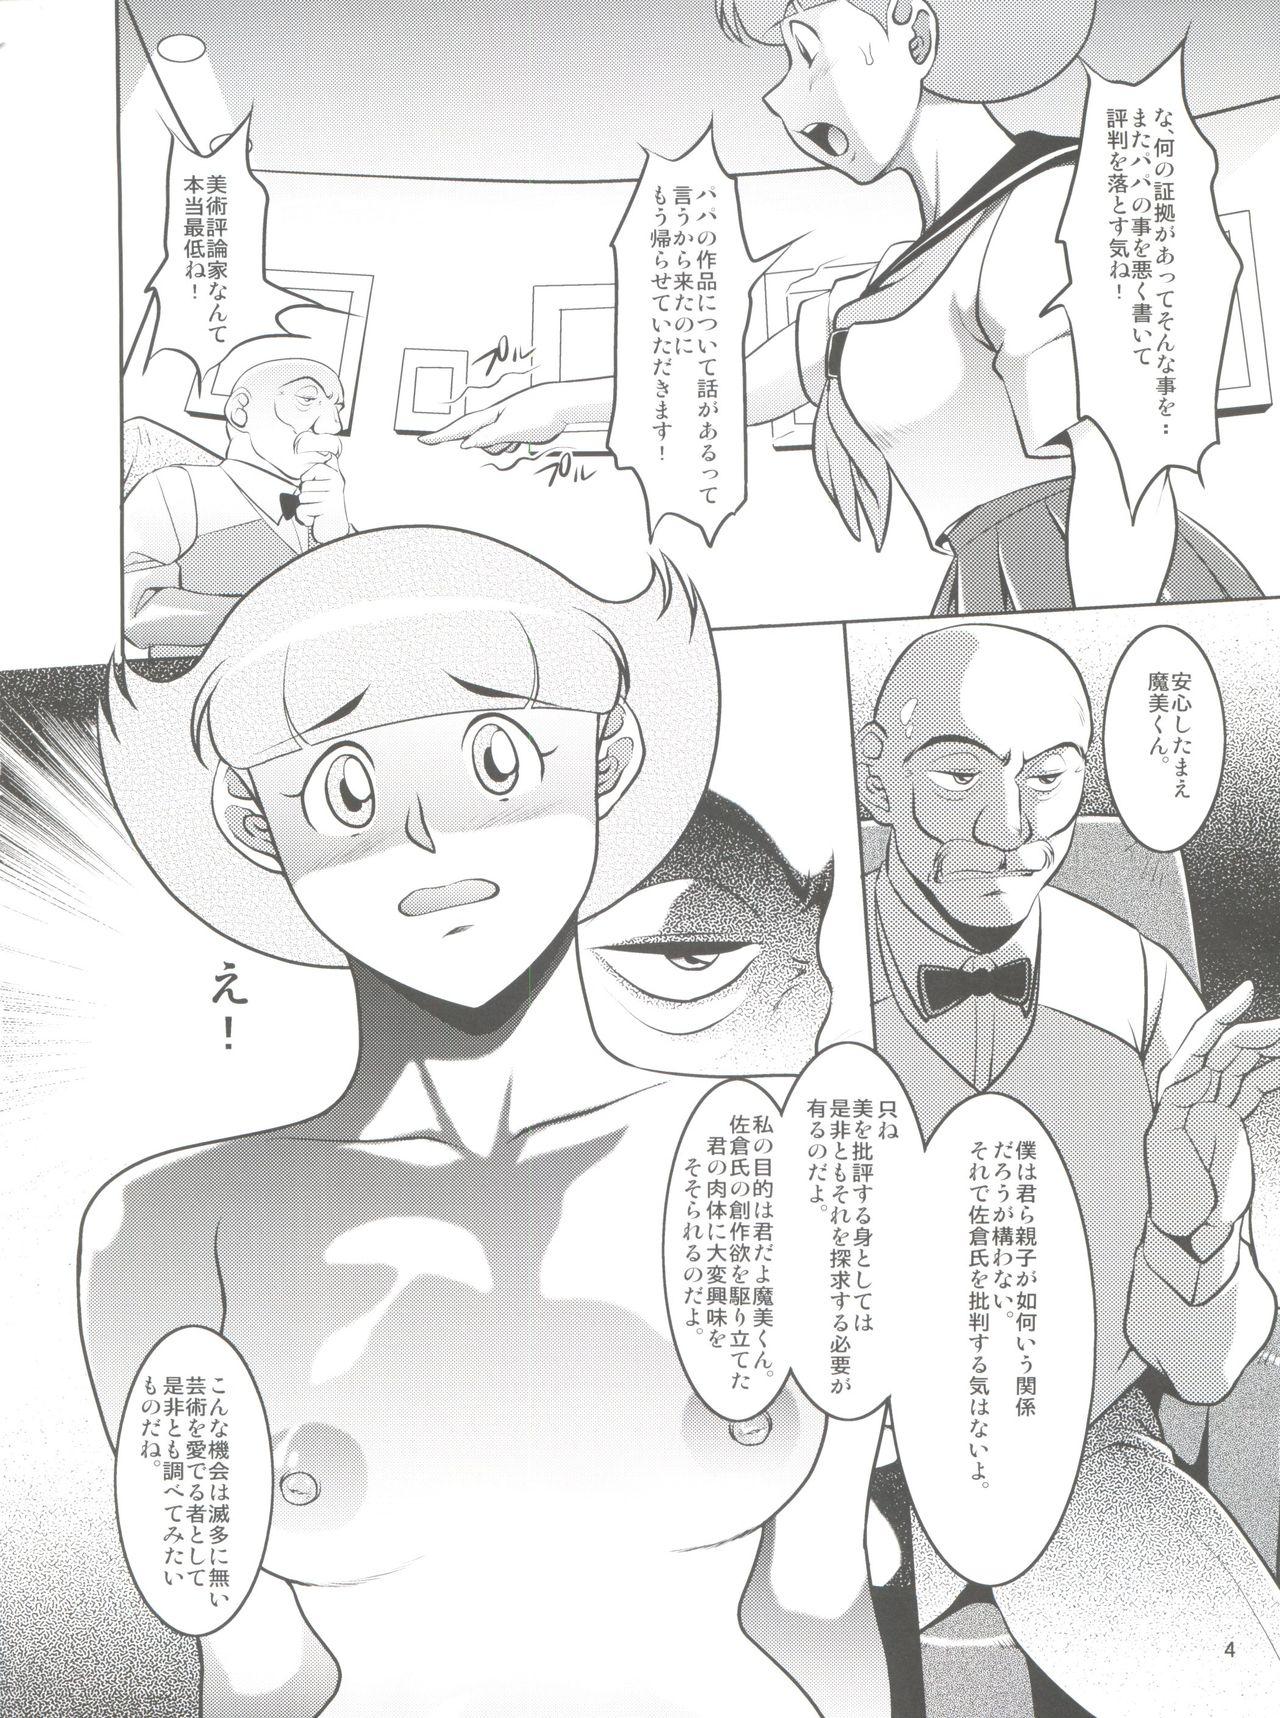 Porno Papa to Watashi no Himitsu no Atelier 3 - Esper mami Tongue - Page 4